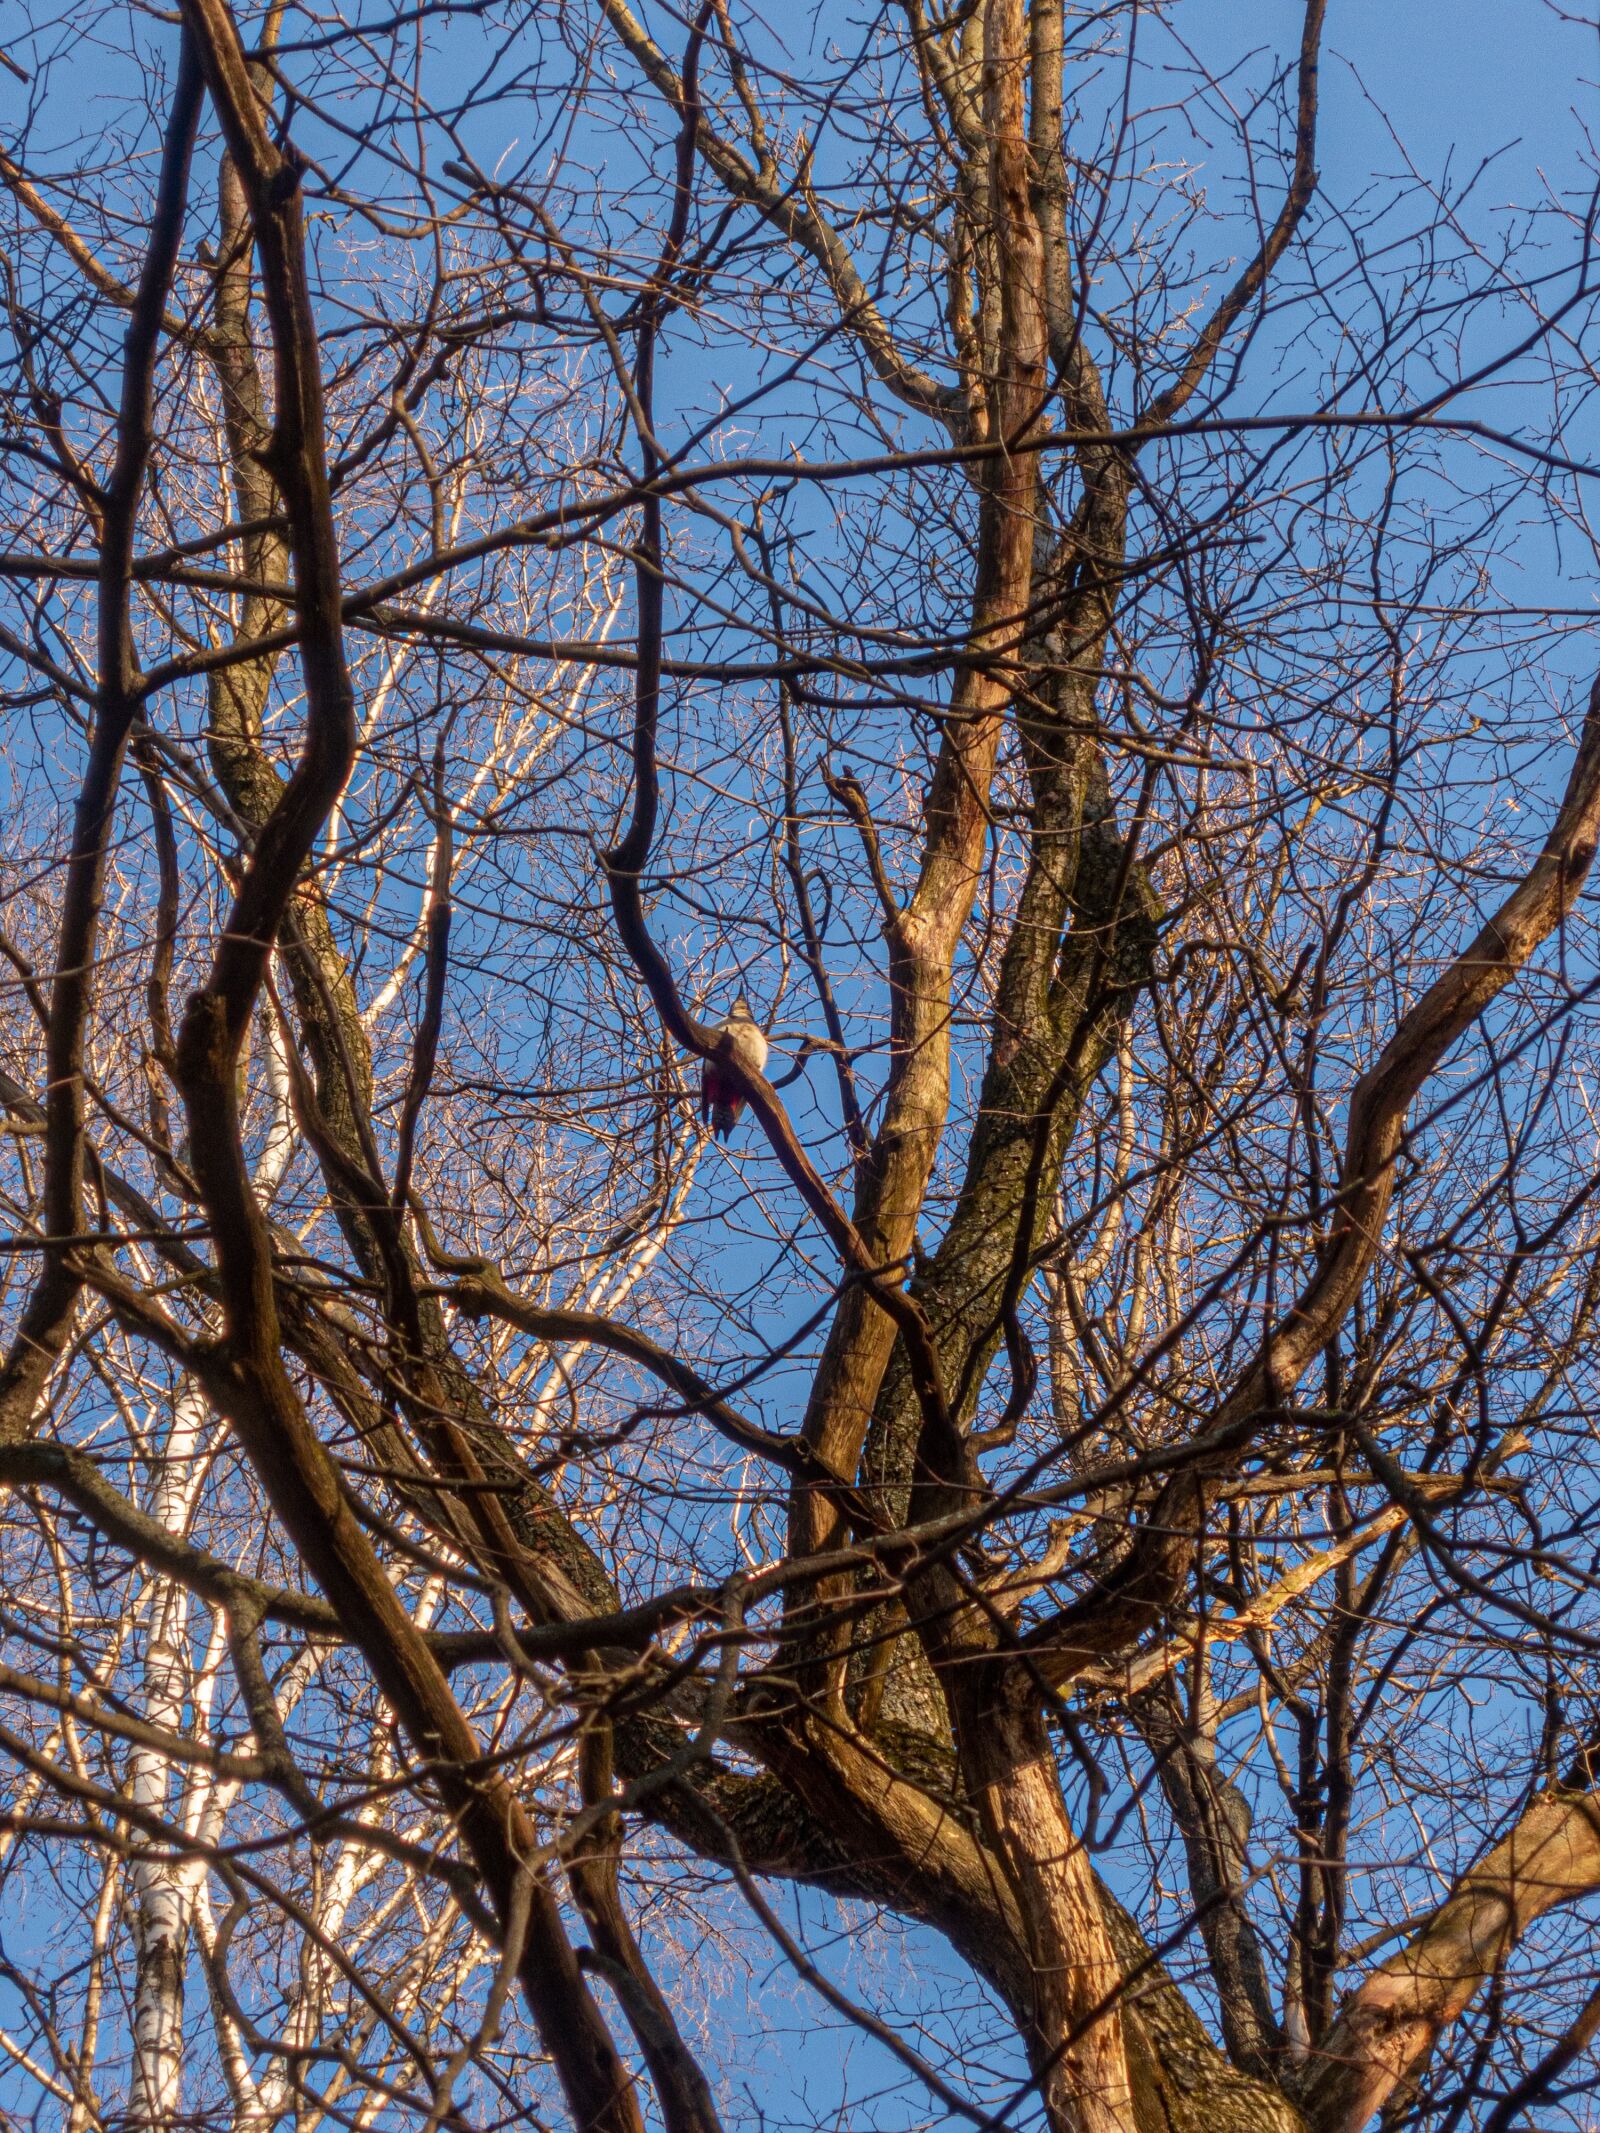 Nikon Coolpix P340 sample photo. Tree, sky, bird photography